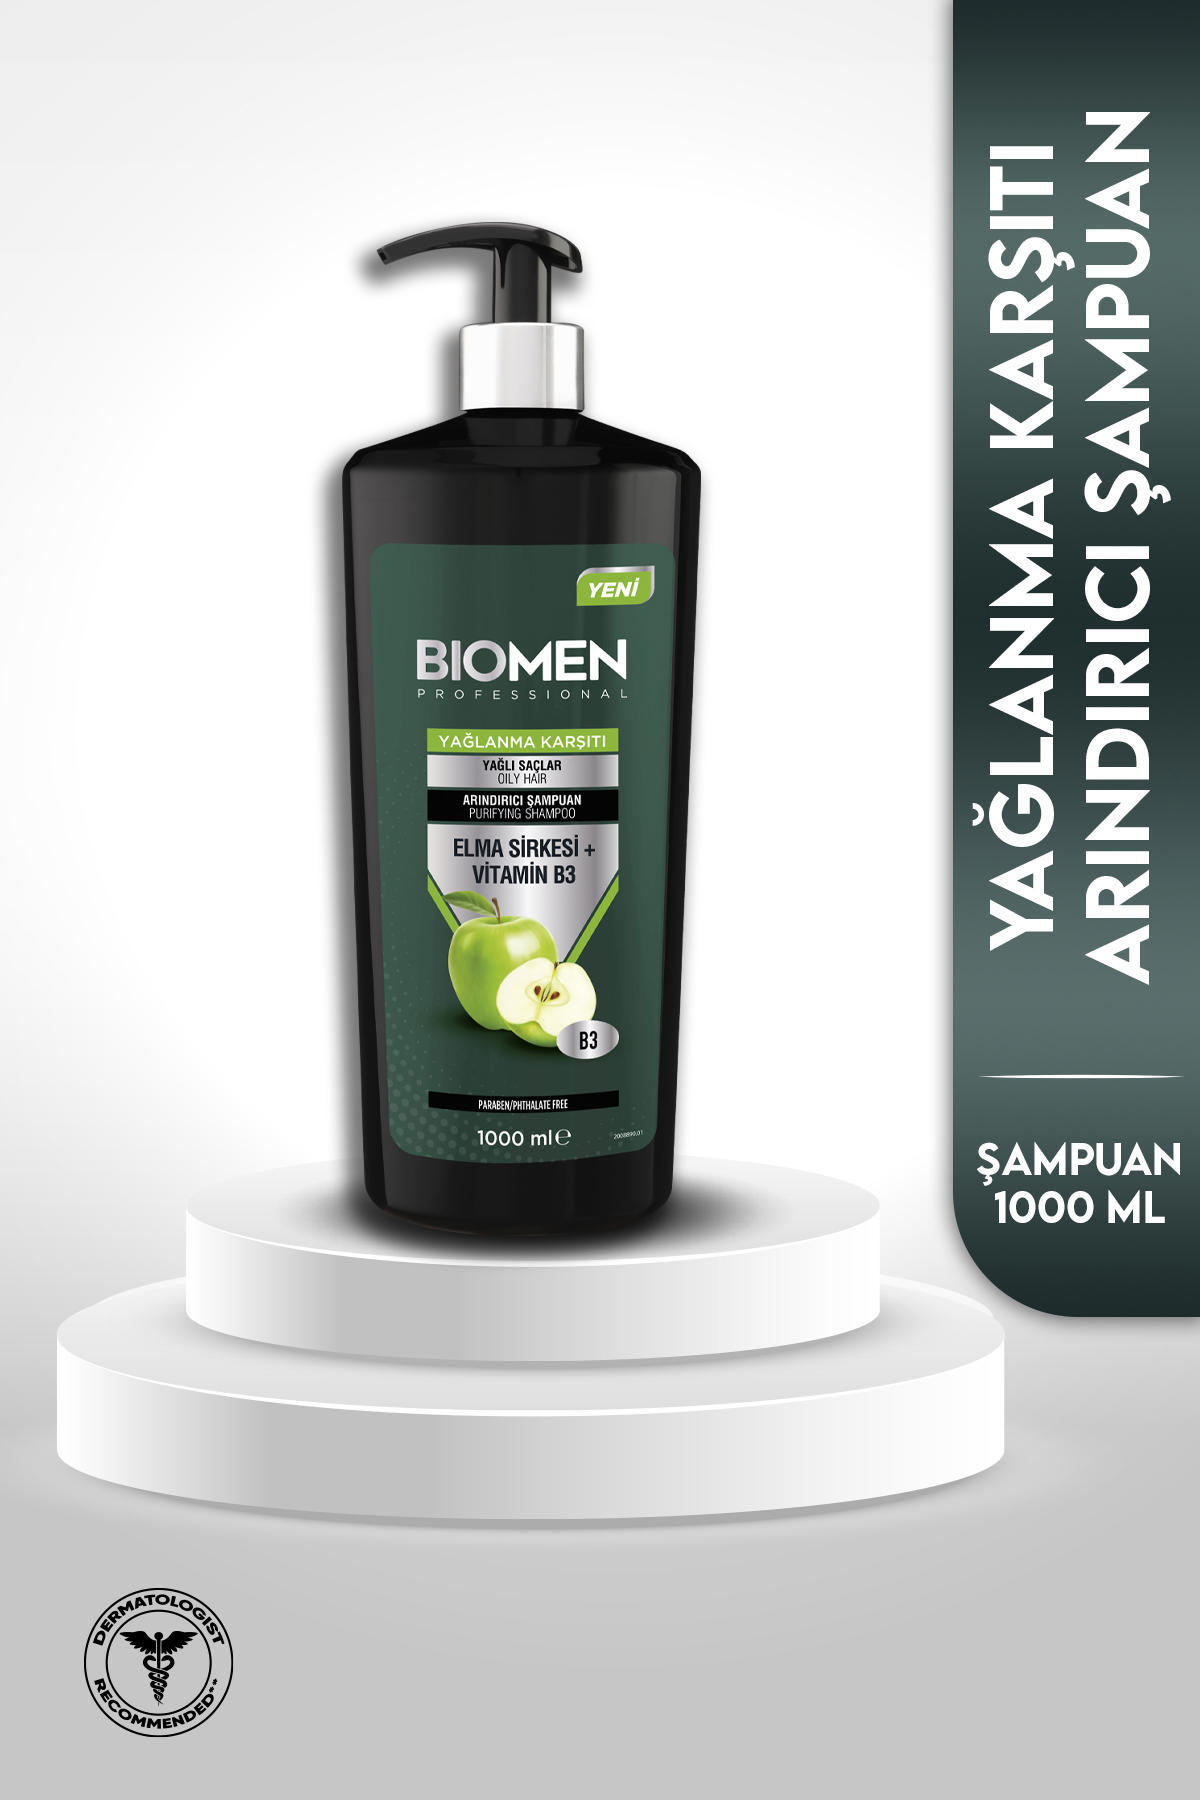 Biomen Professional Arındırıcı Şampuan 1000 ml